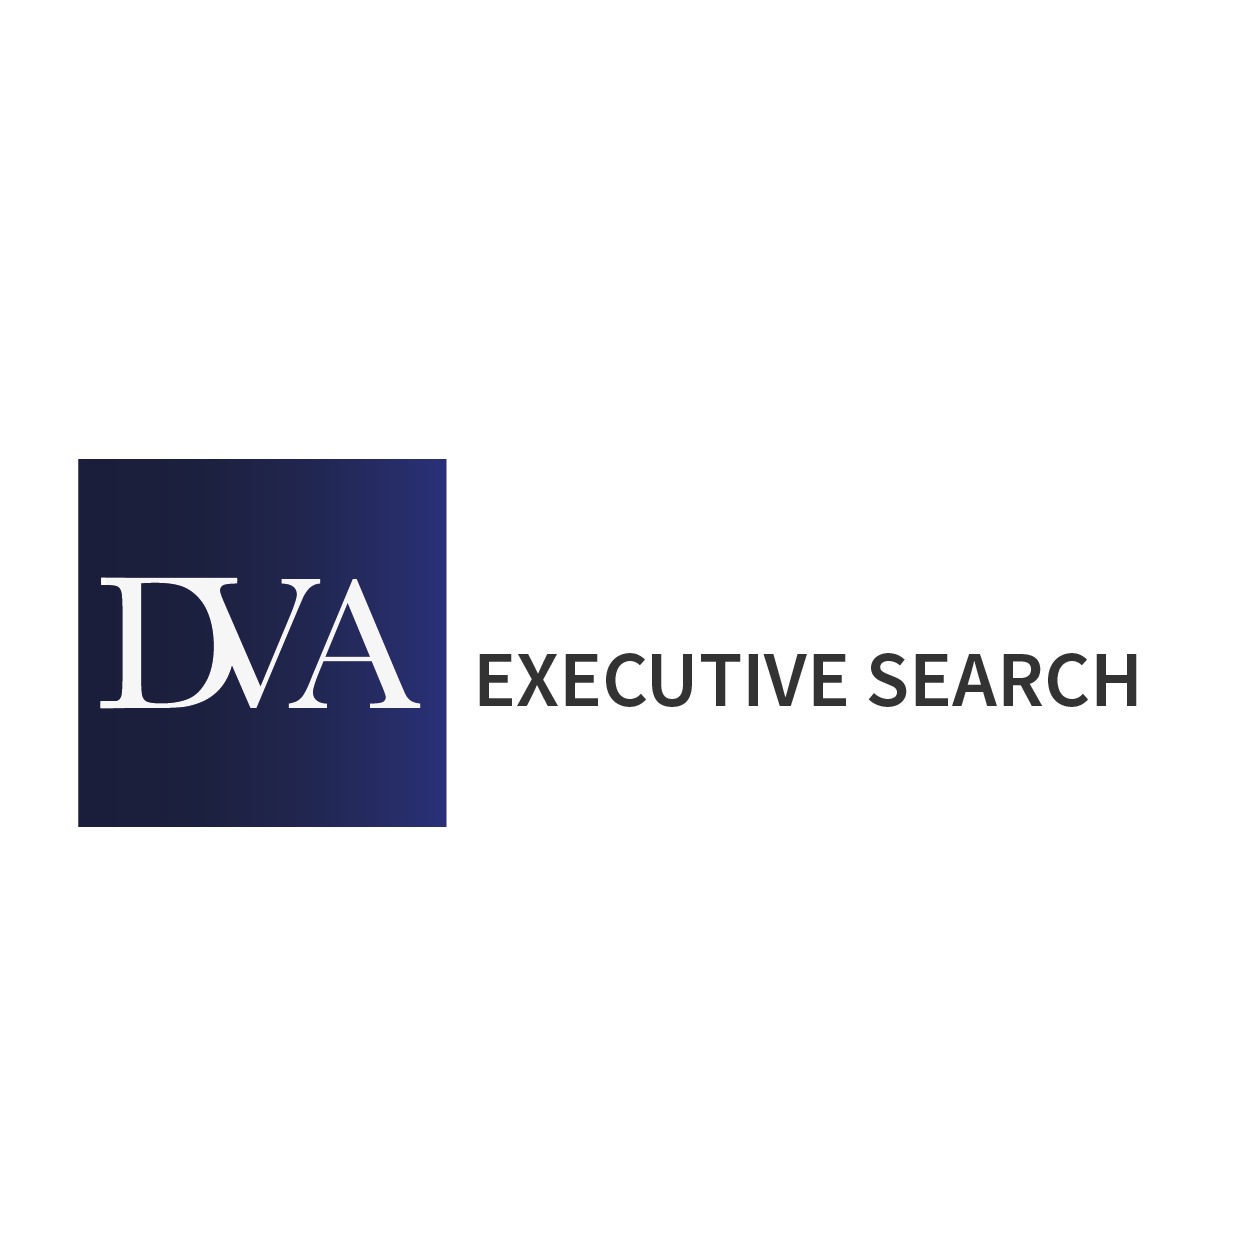 DVA Executive Search